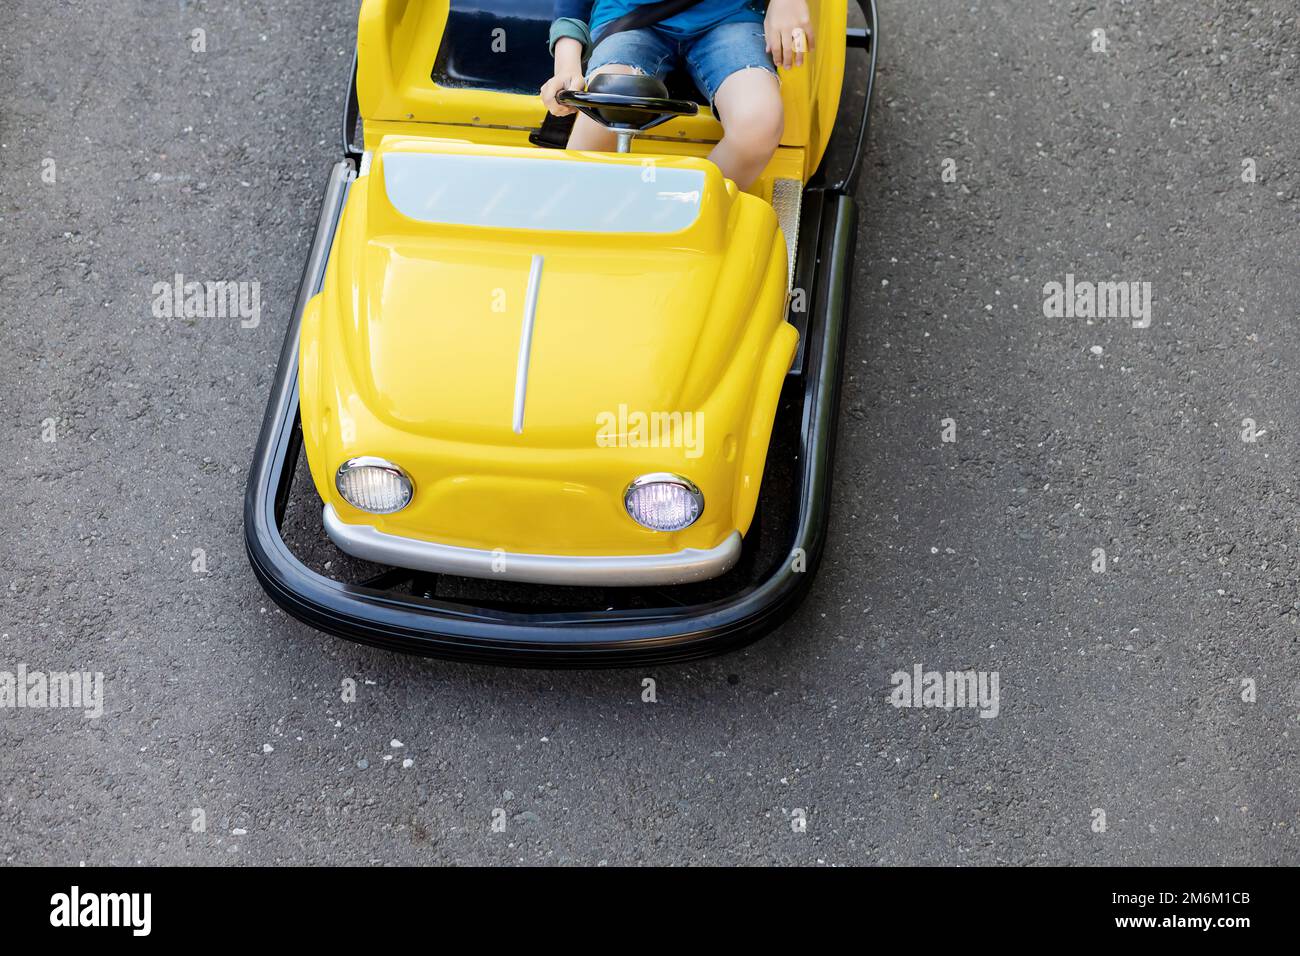 Ein Kind fährt ein kleines gelbes Auto mit runden Scheinwerfern auf einer Asphaltstraße. Highway für Kinder im Vergnügungspark Stockfoto